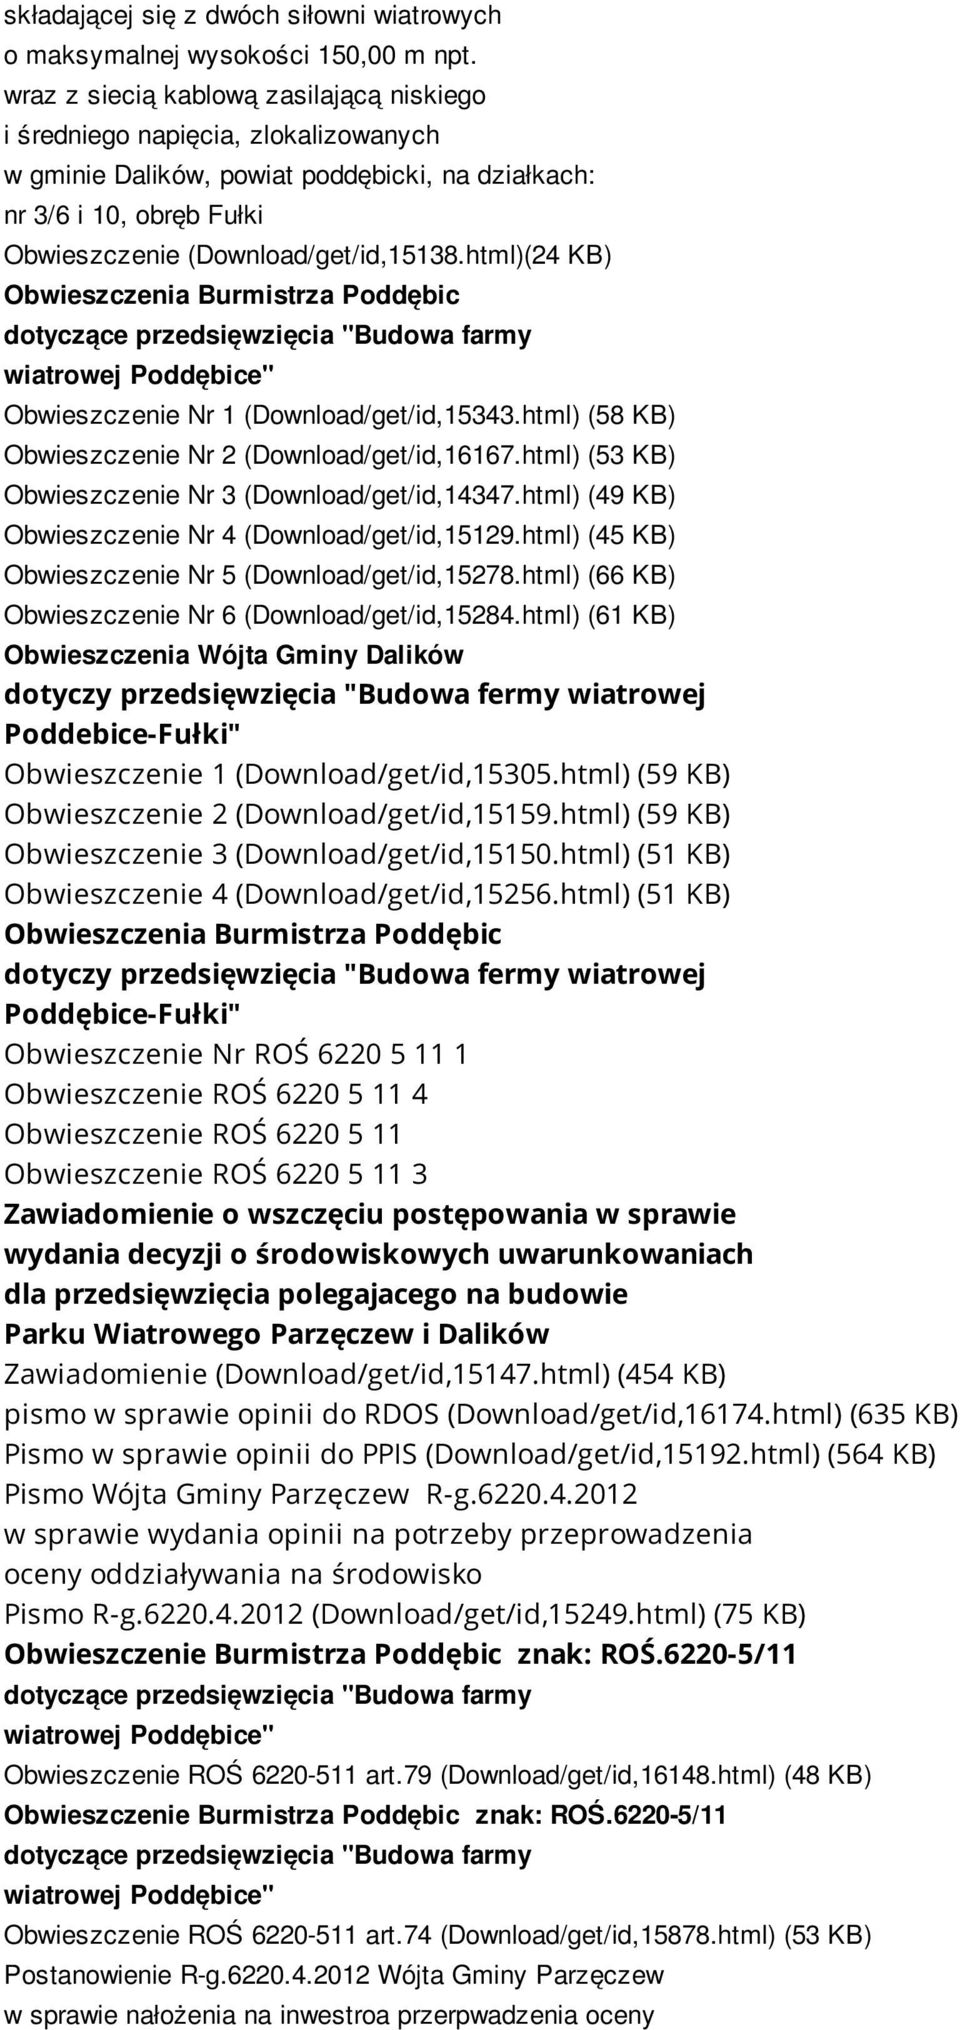 html)(24 KB) Obwieszczenia Burmistrza Poddębic dotyczące przedsięwzięcia "Budowa farmy wiatrowej Poddębice" Obwieszczenie Nr 1 (Download/get/id,15343.